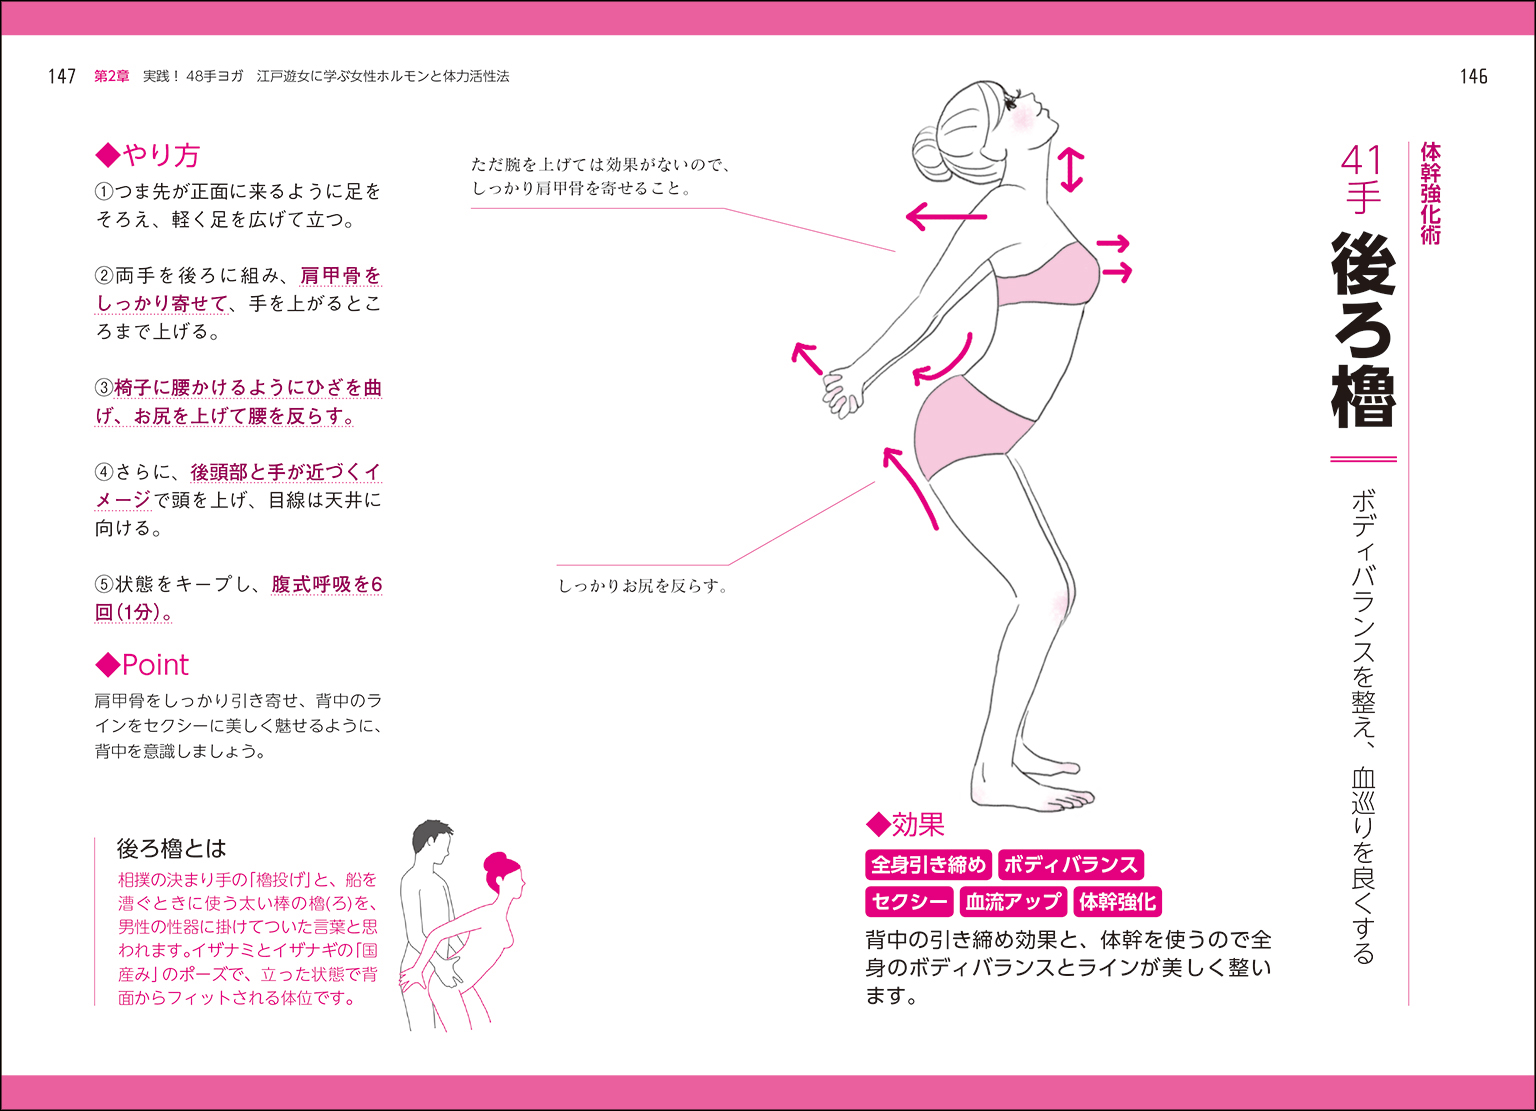 48手ヨガ 江戸遊女に学ぶ女性ホルモンと体力活性法 Sankeibiz サンケイビズ 自分を磨く経済情報サイト